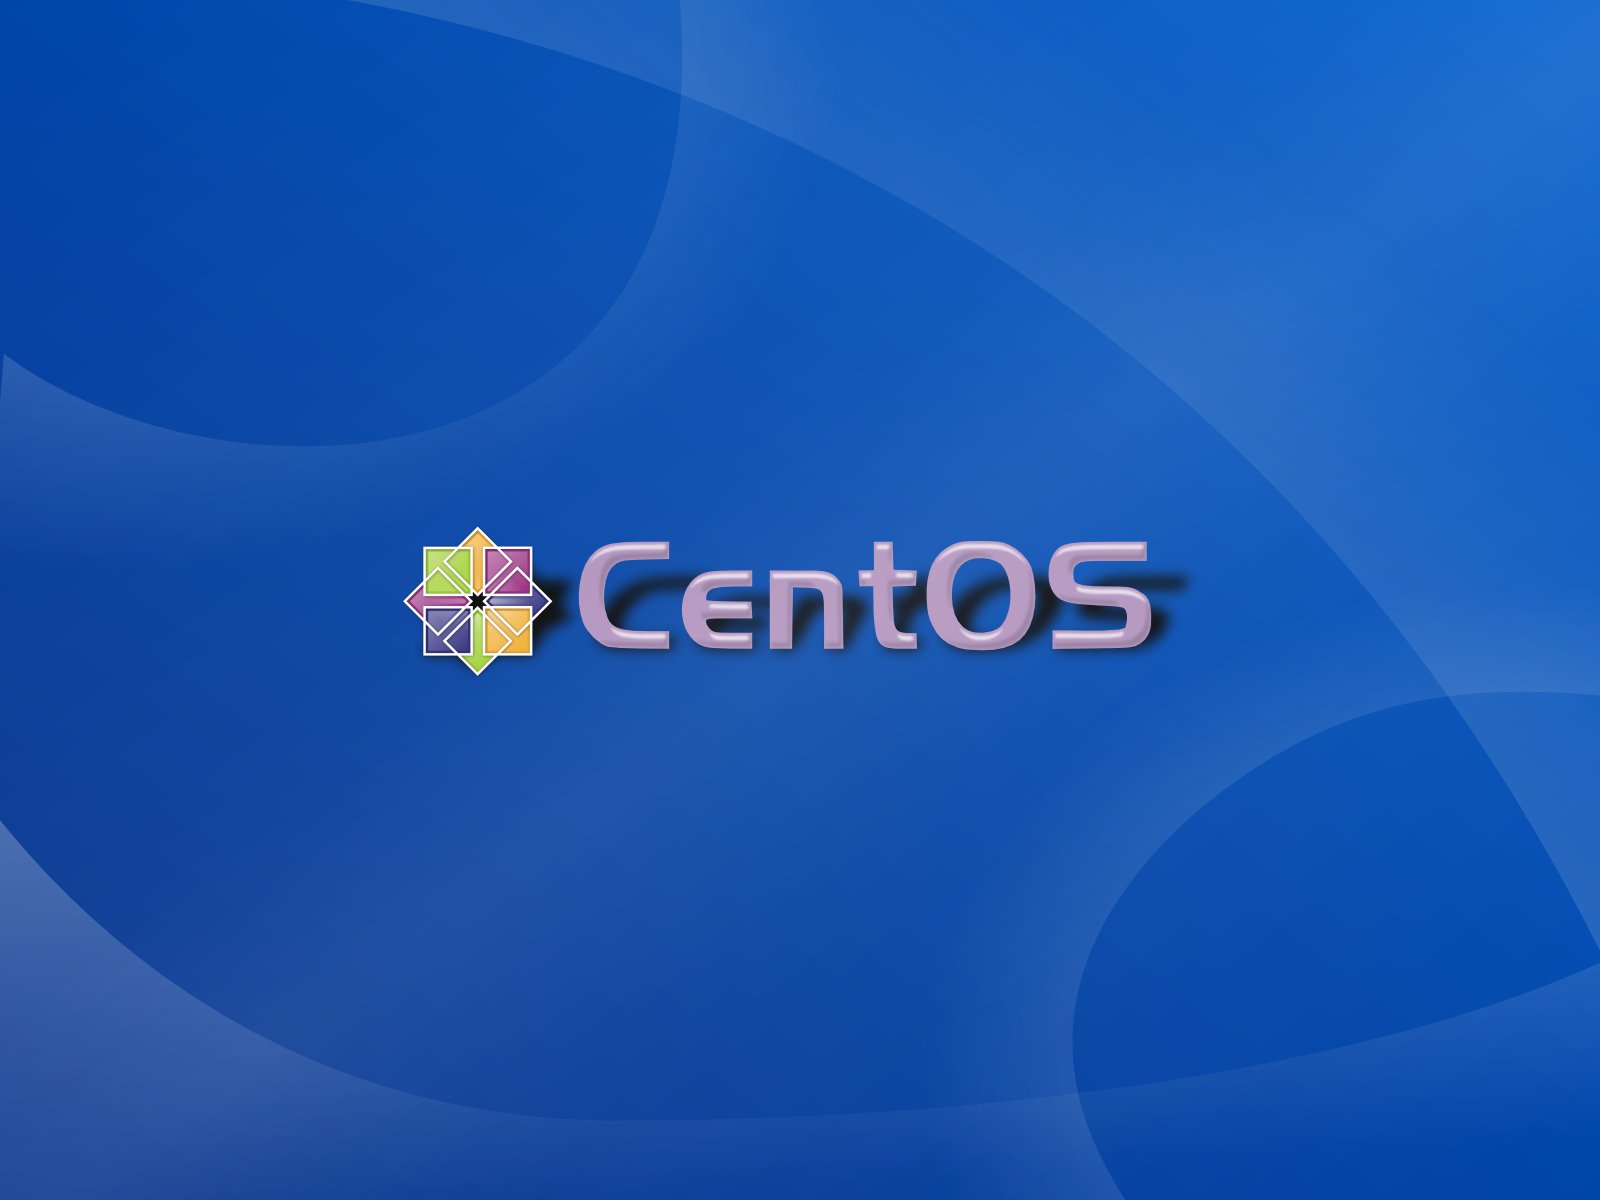 CentOS Graphics and Artwork